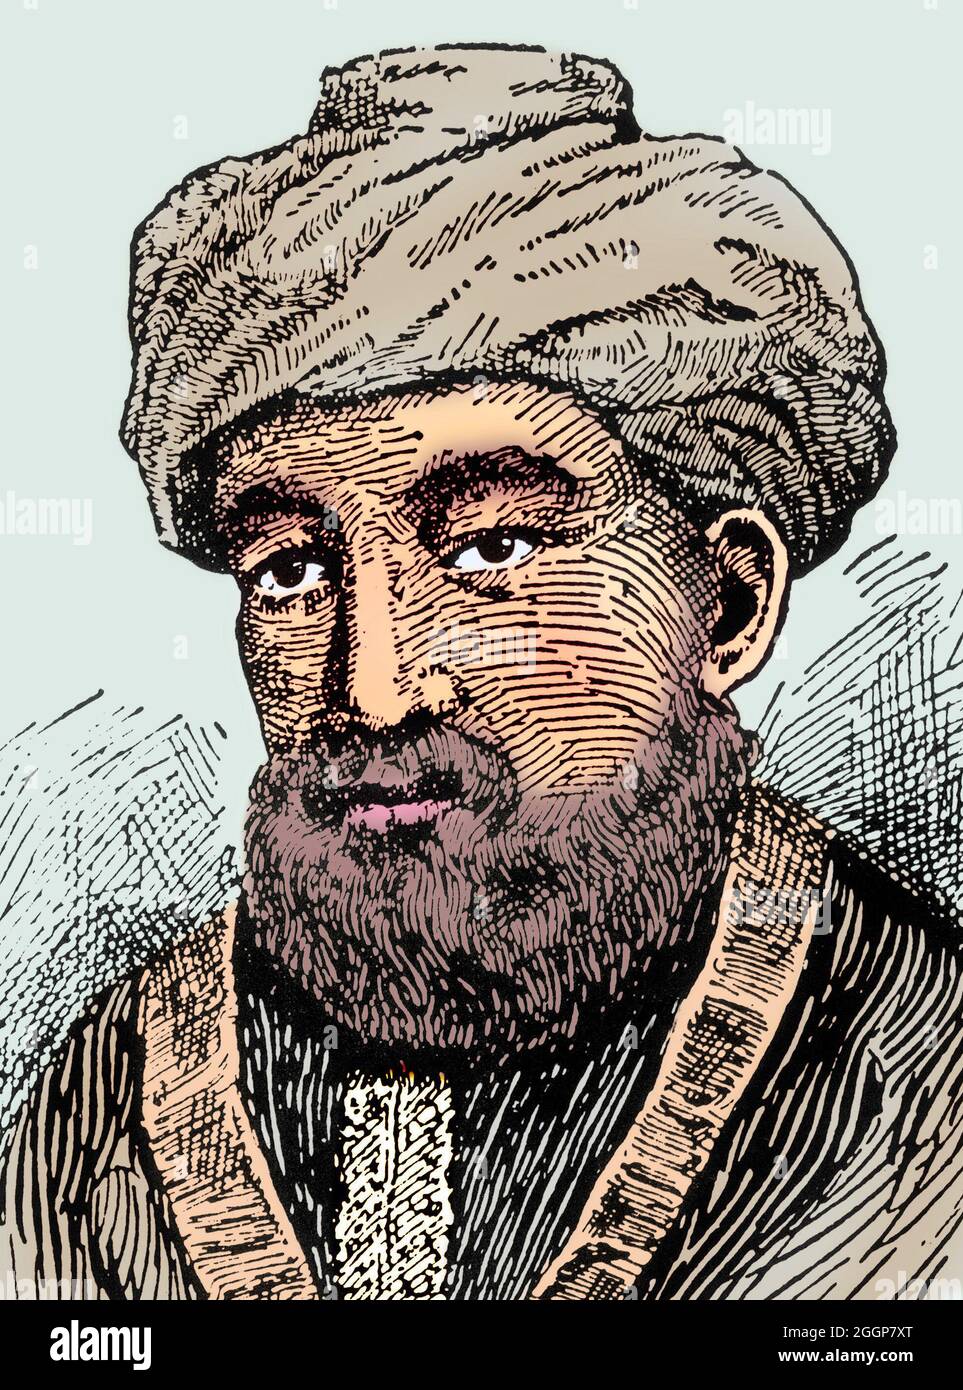 Illustration colorisée de Maimonides. Banque D'Images